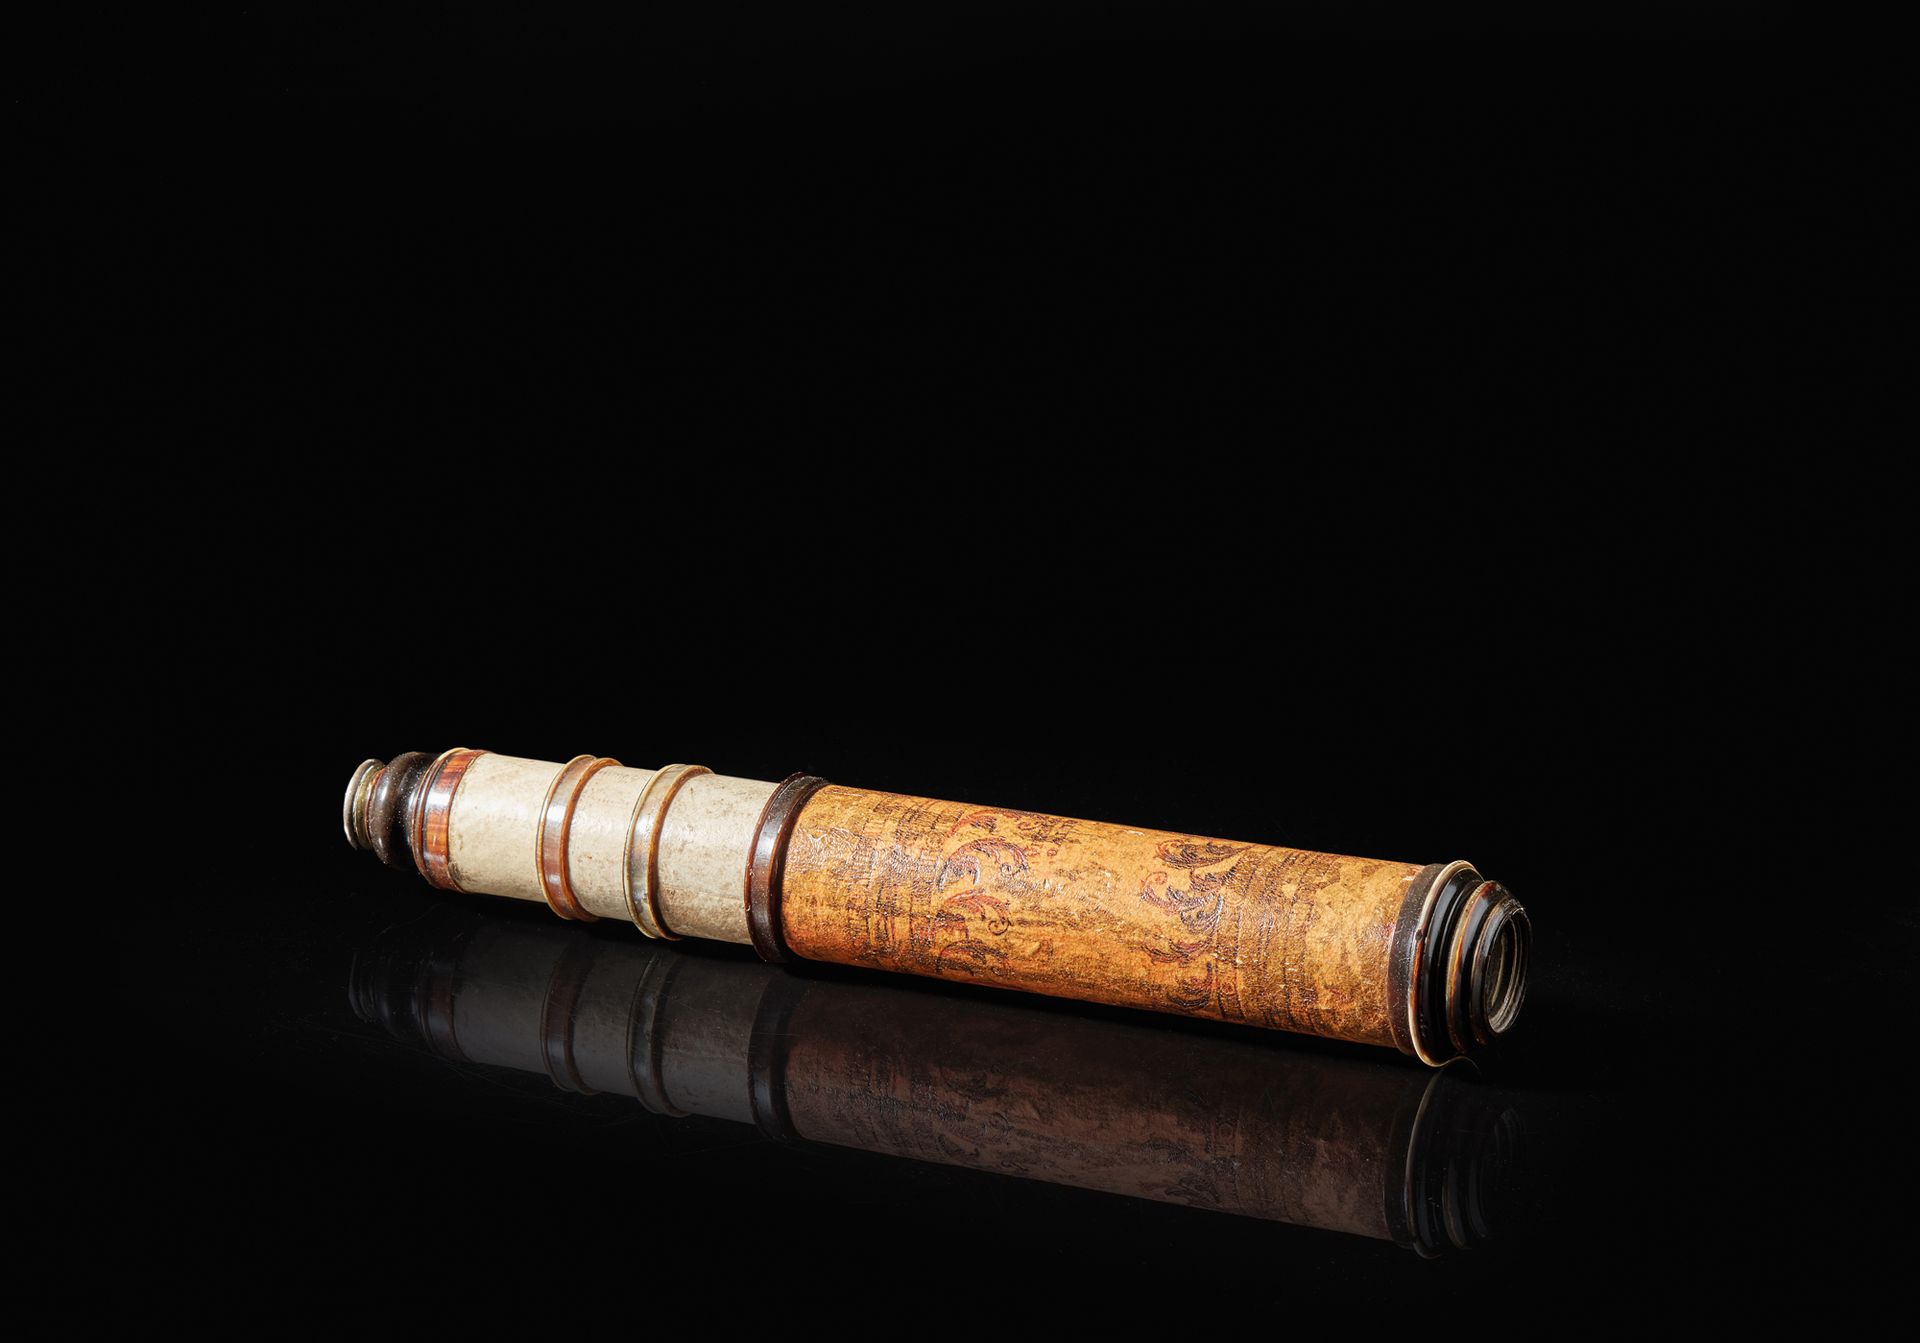 Null 三页纸板的 "威尼斯 "望远镜，镜身绘有花纹图案。戒指和角质目镜，签名为威尼斯的OLIVO
意大利，18世纪